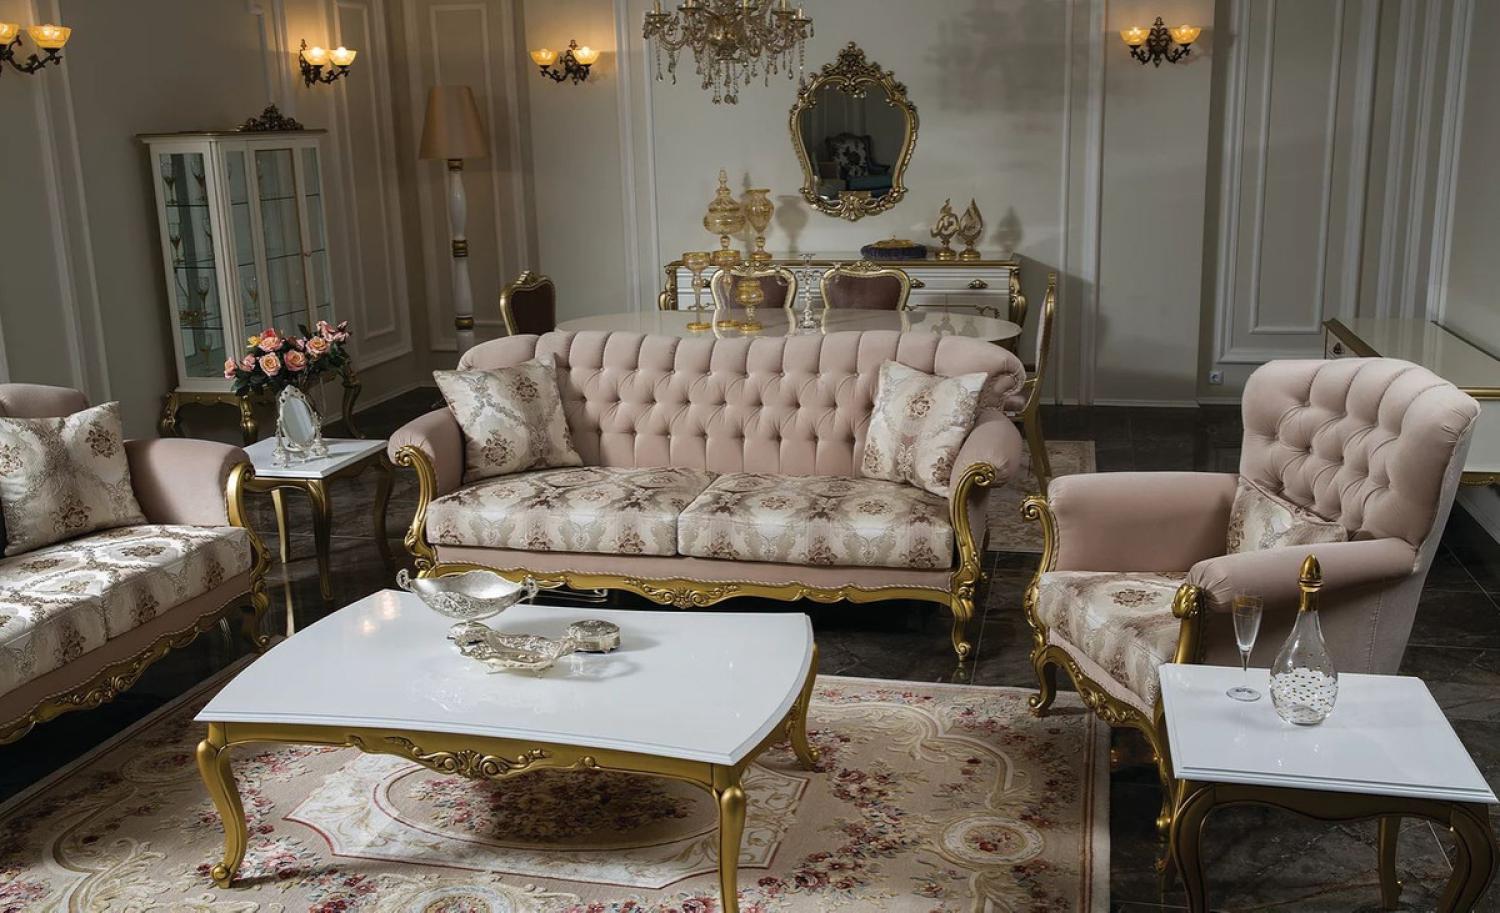 Casa Padrino Luxus Barock Wohnzimmer Set Rosa / Weiß / Gold - 2 Sofas & 2 Sessel & 1 Couchtisch & 2 Beistelltische - Wohnzimmer Möbel im Barockstil - Edel & Prunkvoll Bild 1